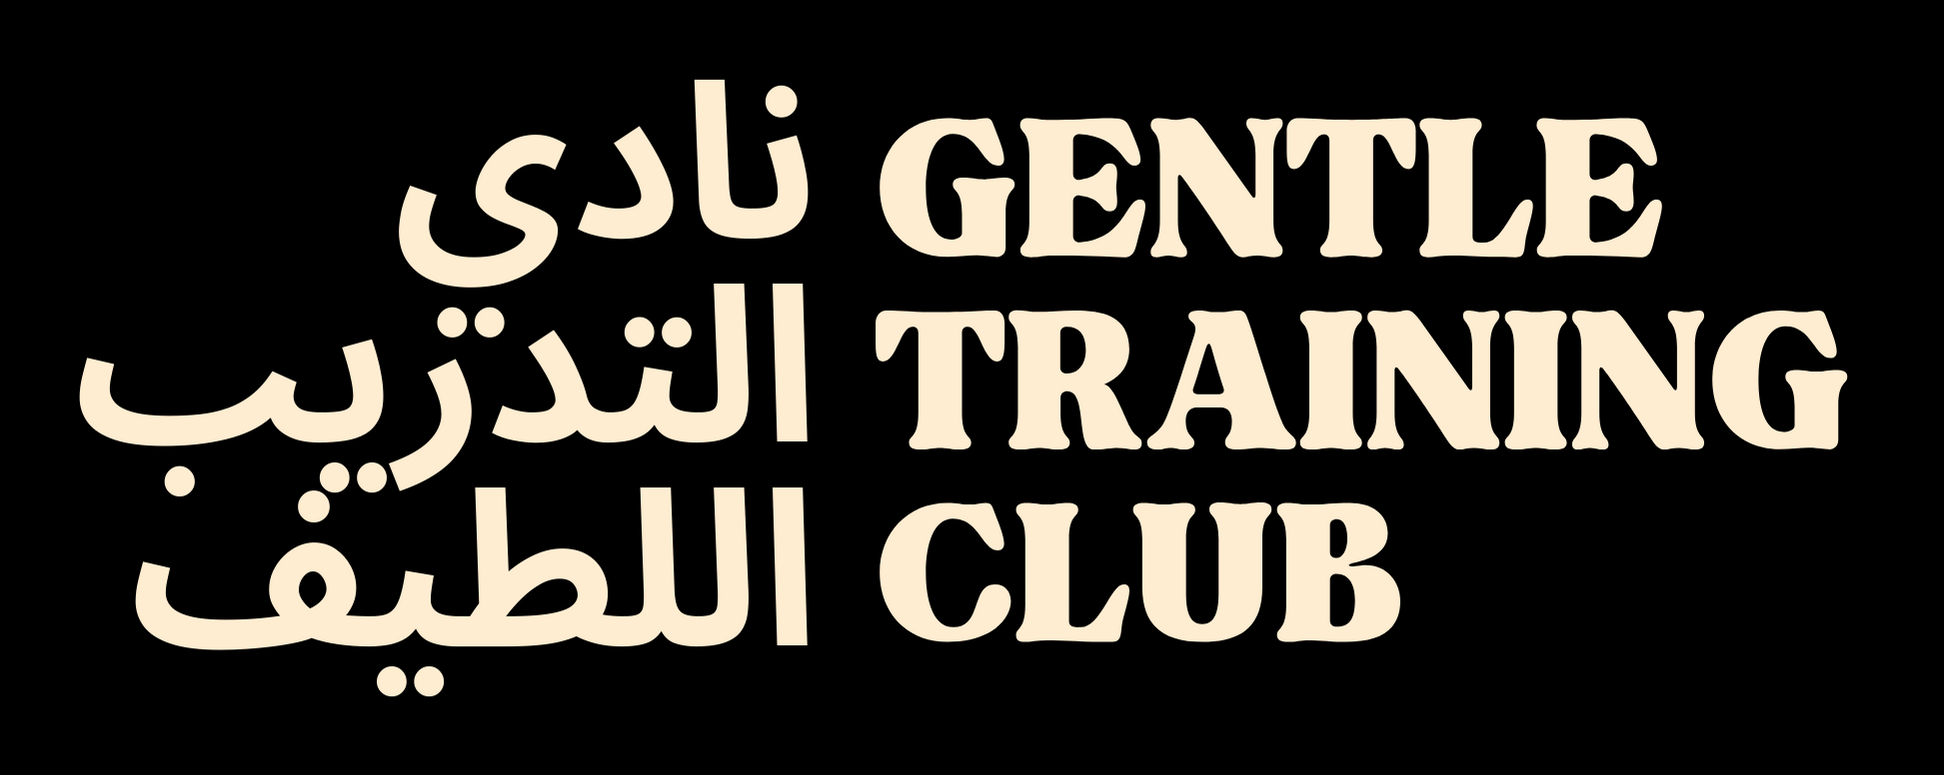 Gentle Training Club